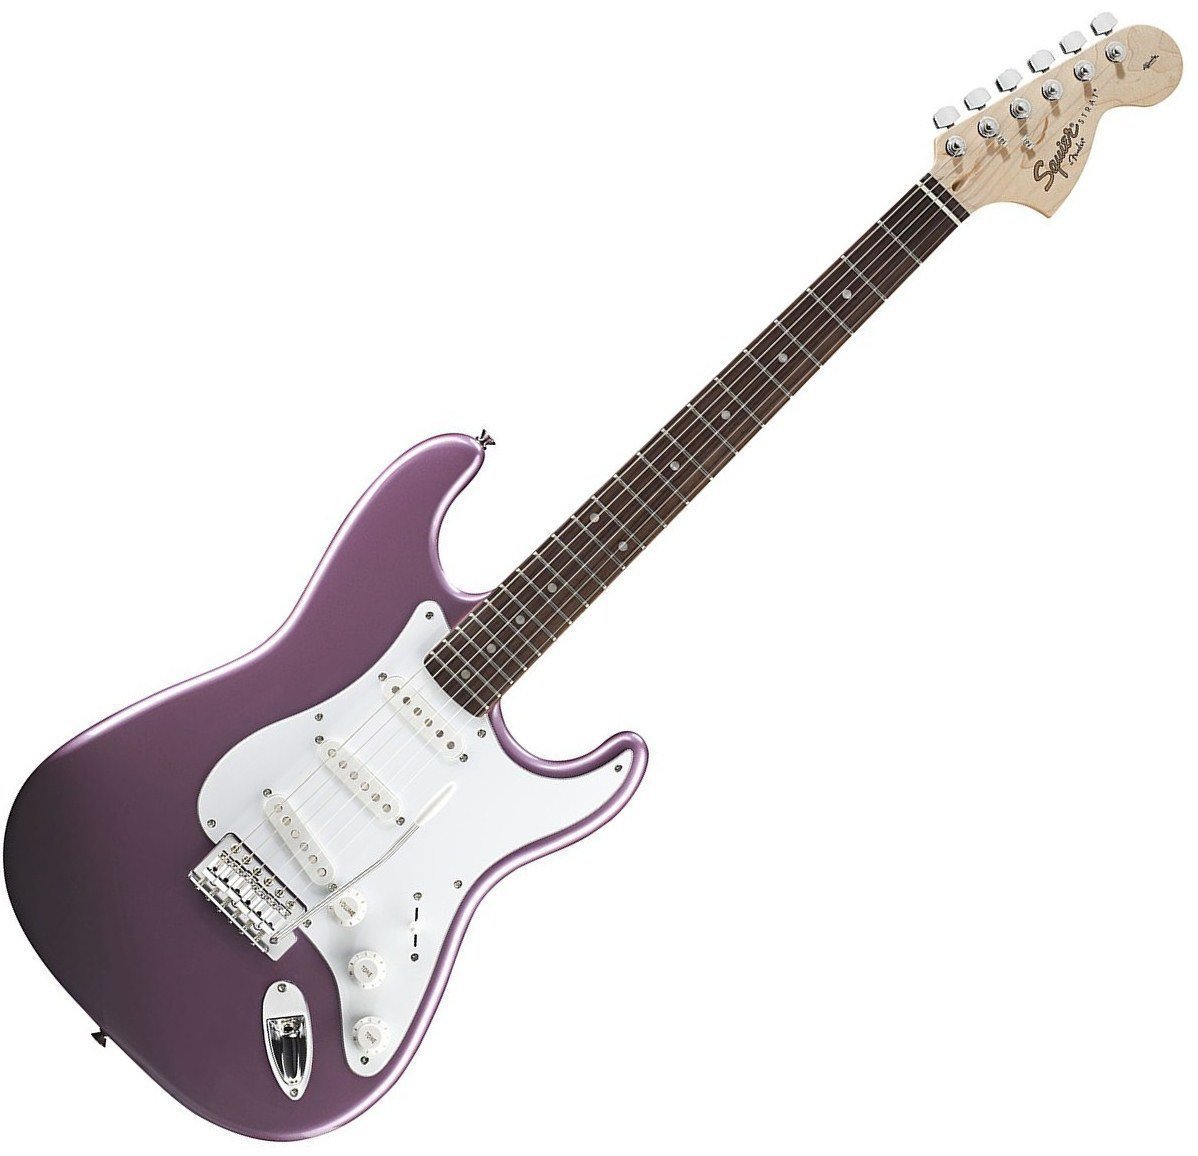 Ηλεκτρική Κιθάρα Fender Squier Affinity Stratocaster Burgundy Mist